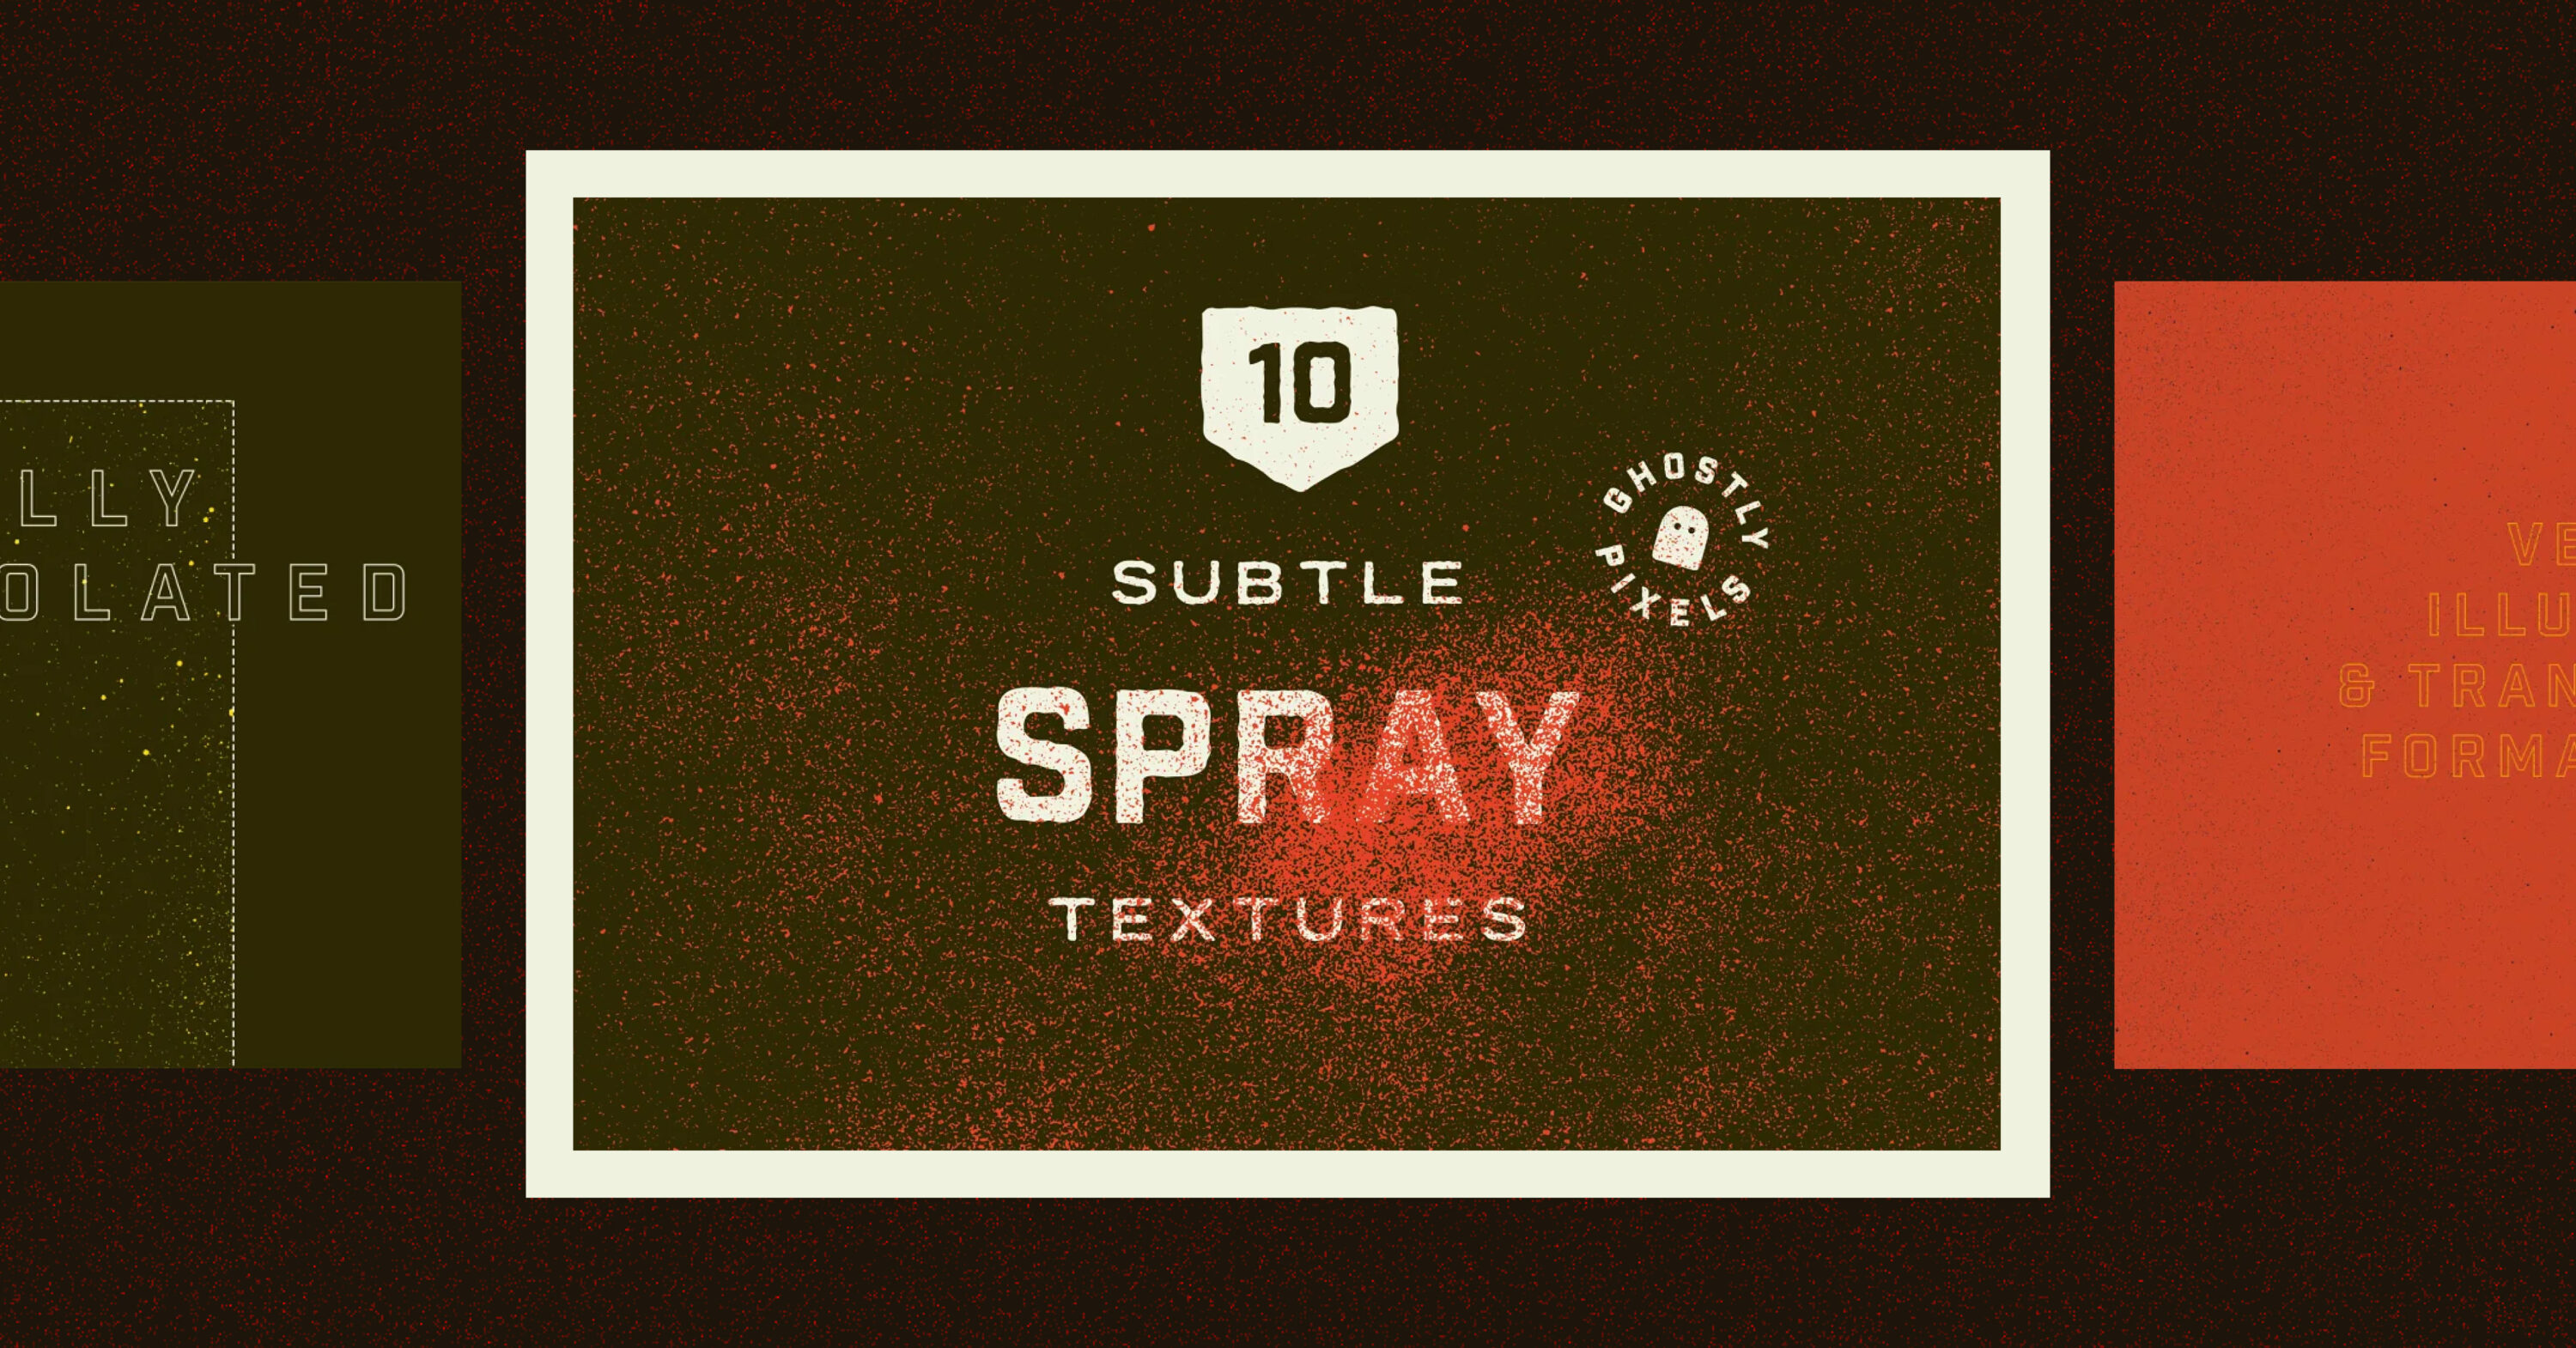 Subtle Spray Paint Textures facebook image.